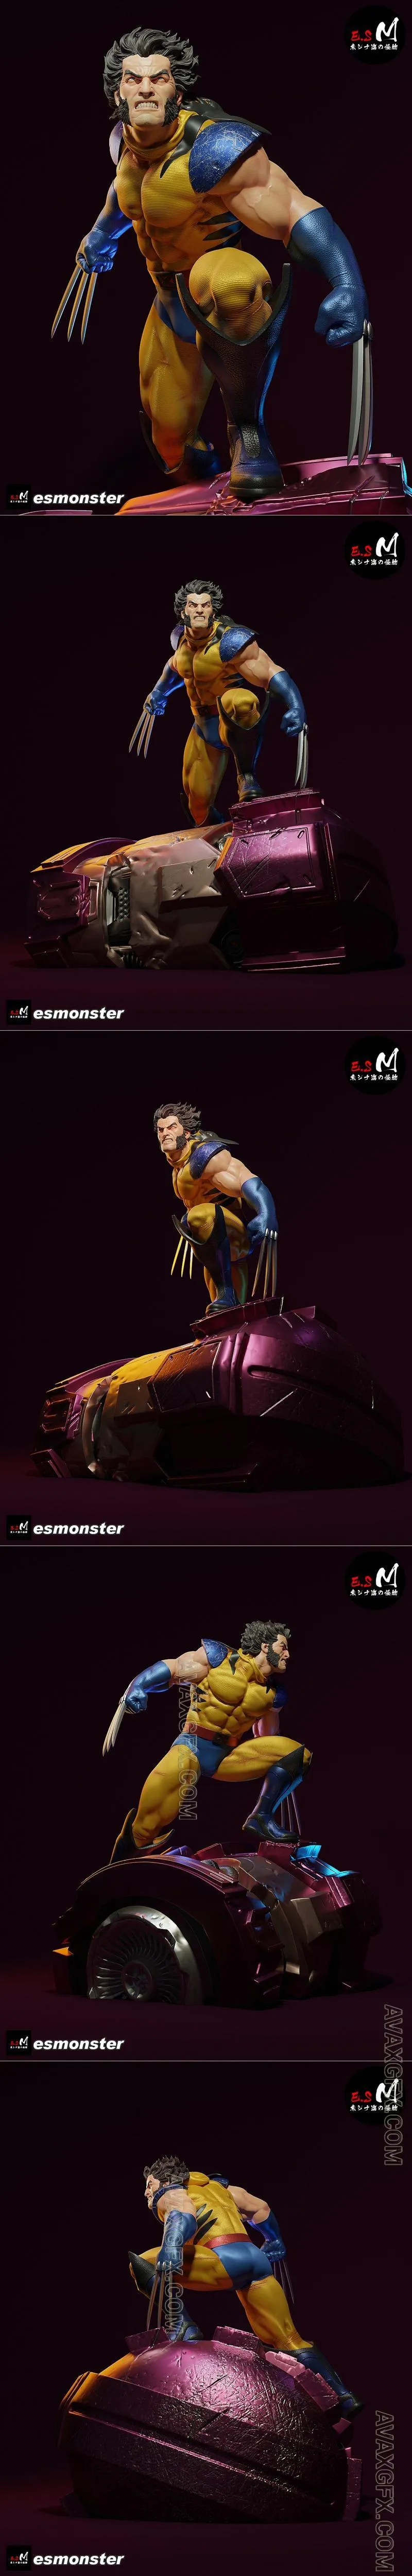 E.S Monster - Wolverine vs Sentinel Marvel - STL 3D Model